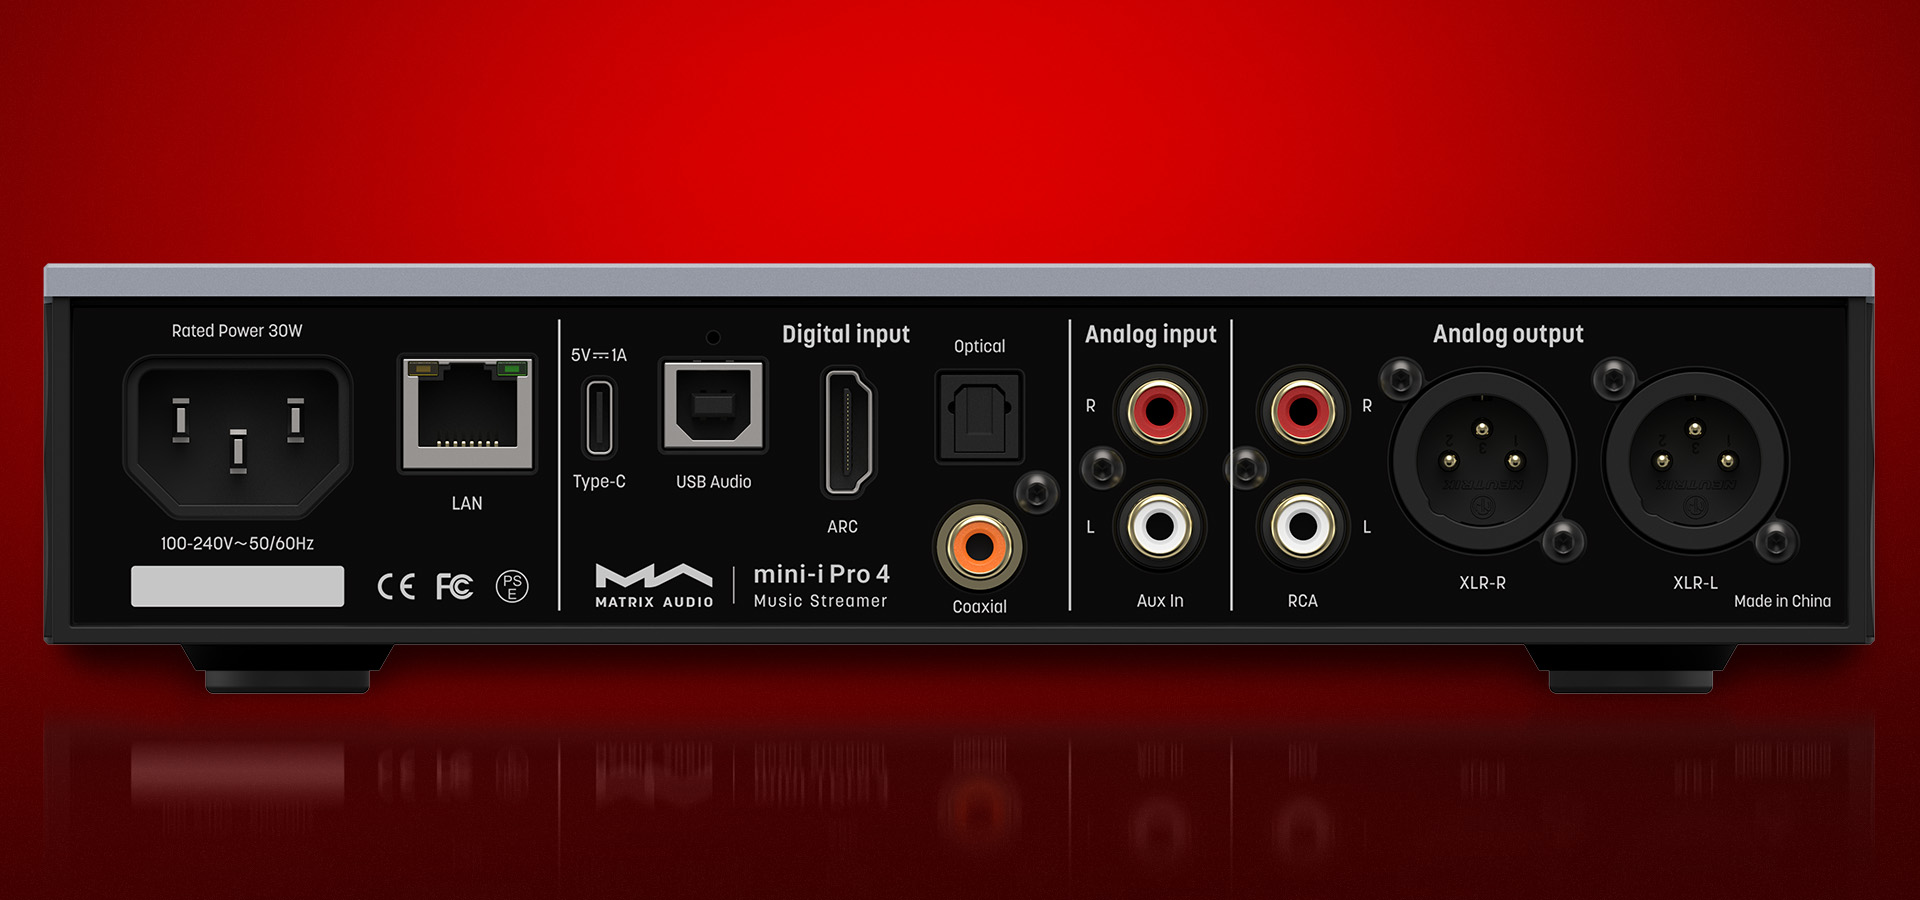 Matrix Audio выпускает музыкальный стример mini-i Pro 4